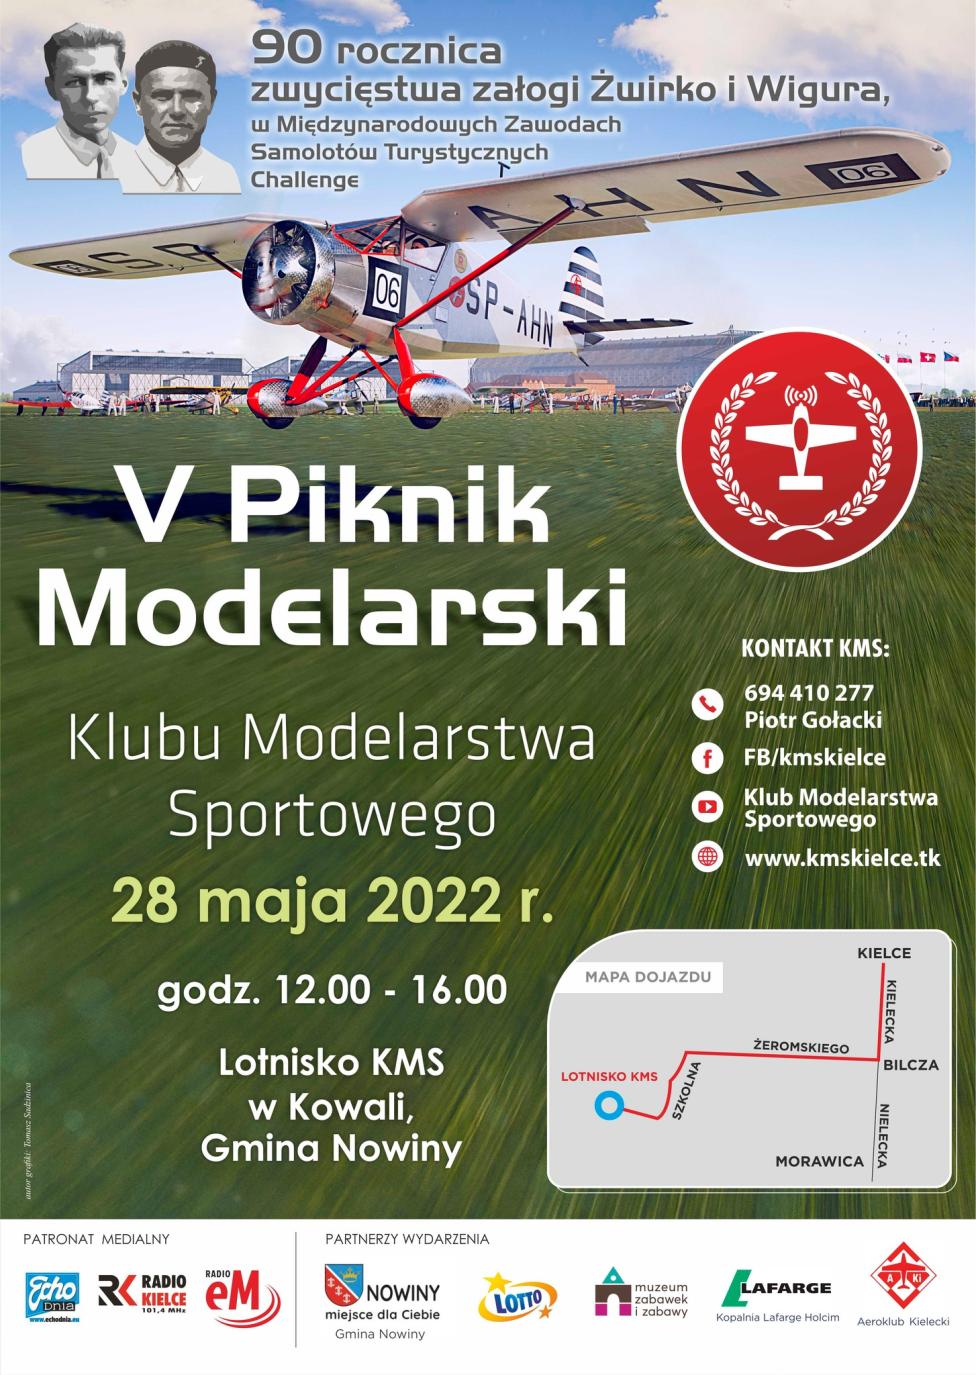 V Piknik Modelarski Klubu Modelarstwa Sportowego na lotnisku w Kowali (fot. Klub Modelarstwa Sportowego w Kielcach)